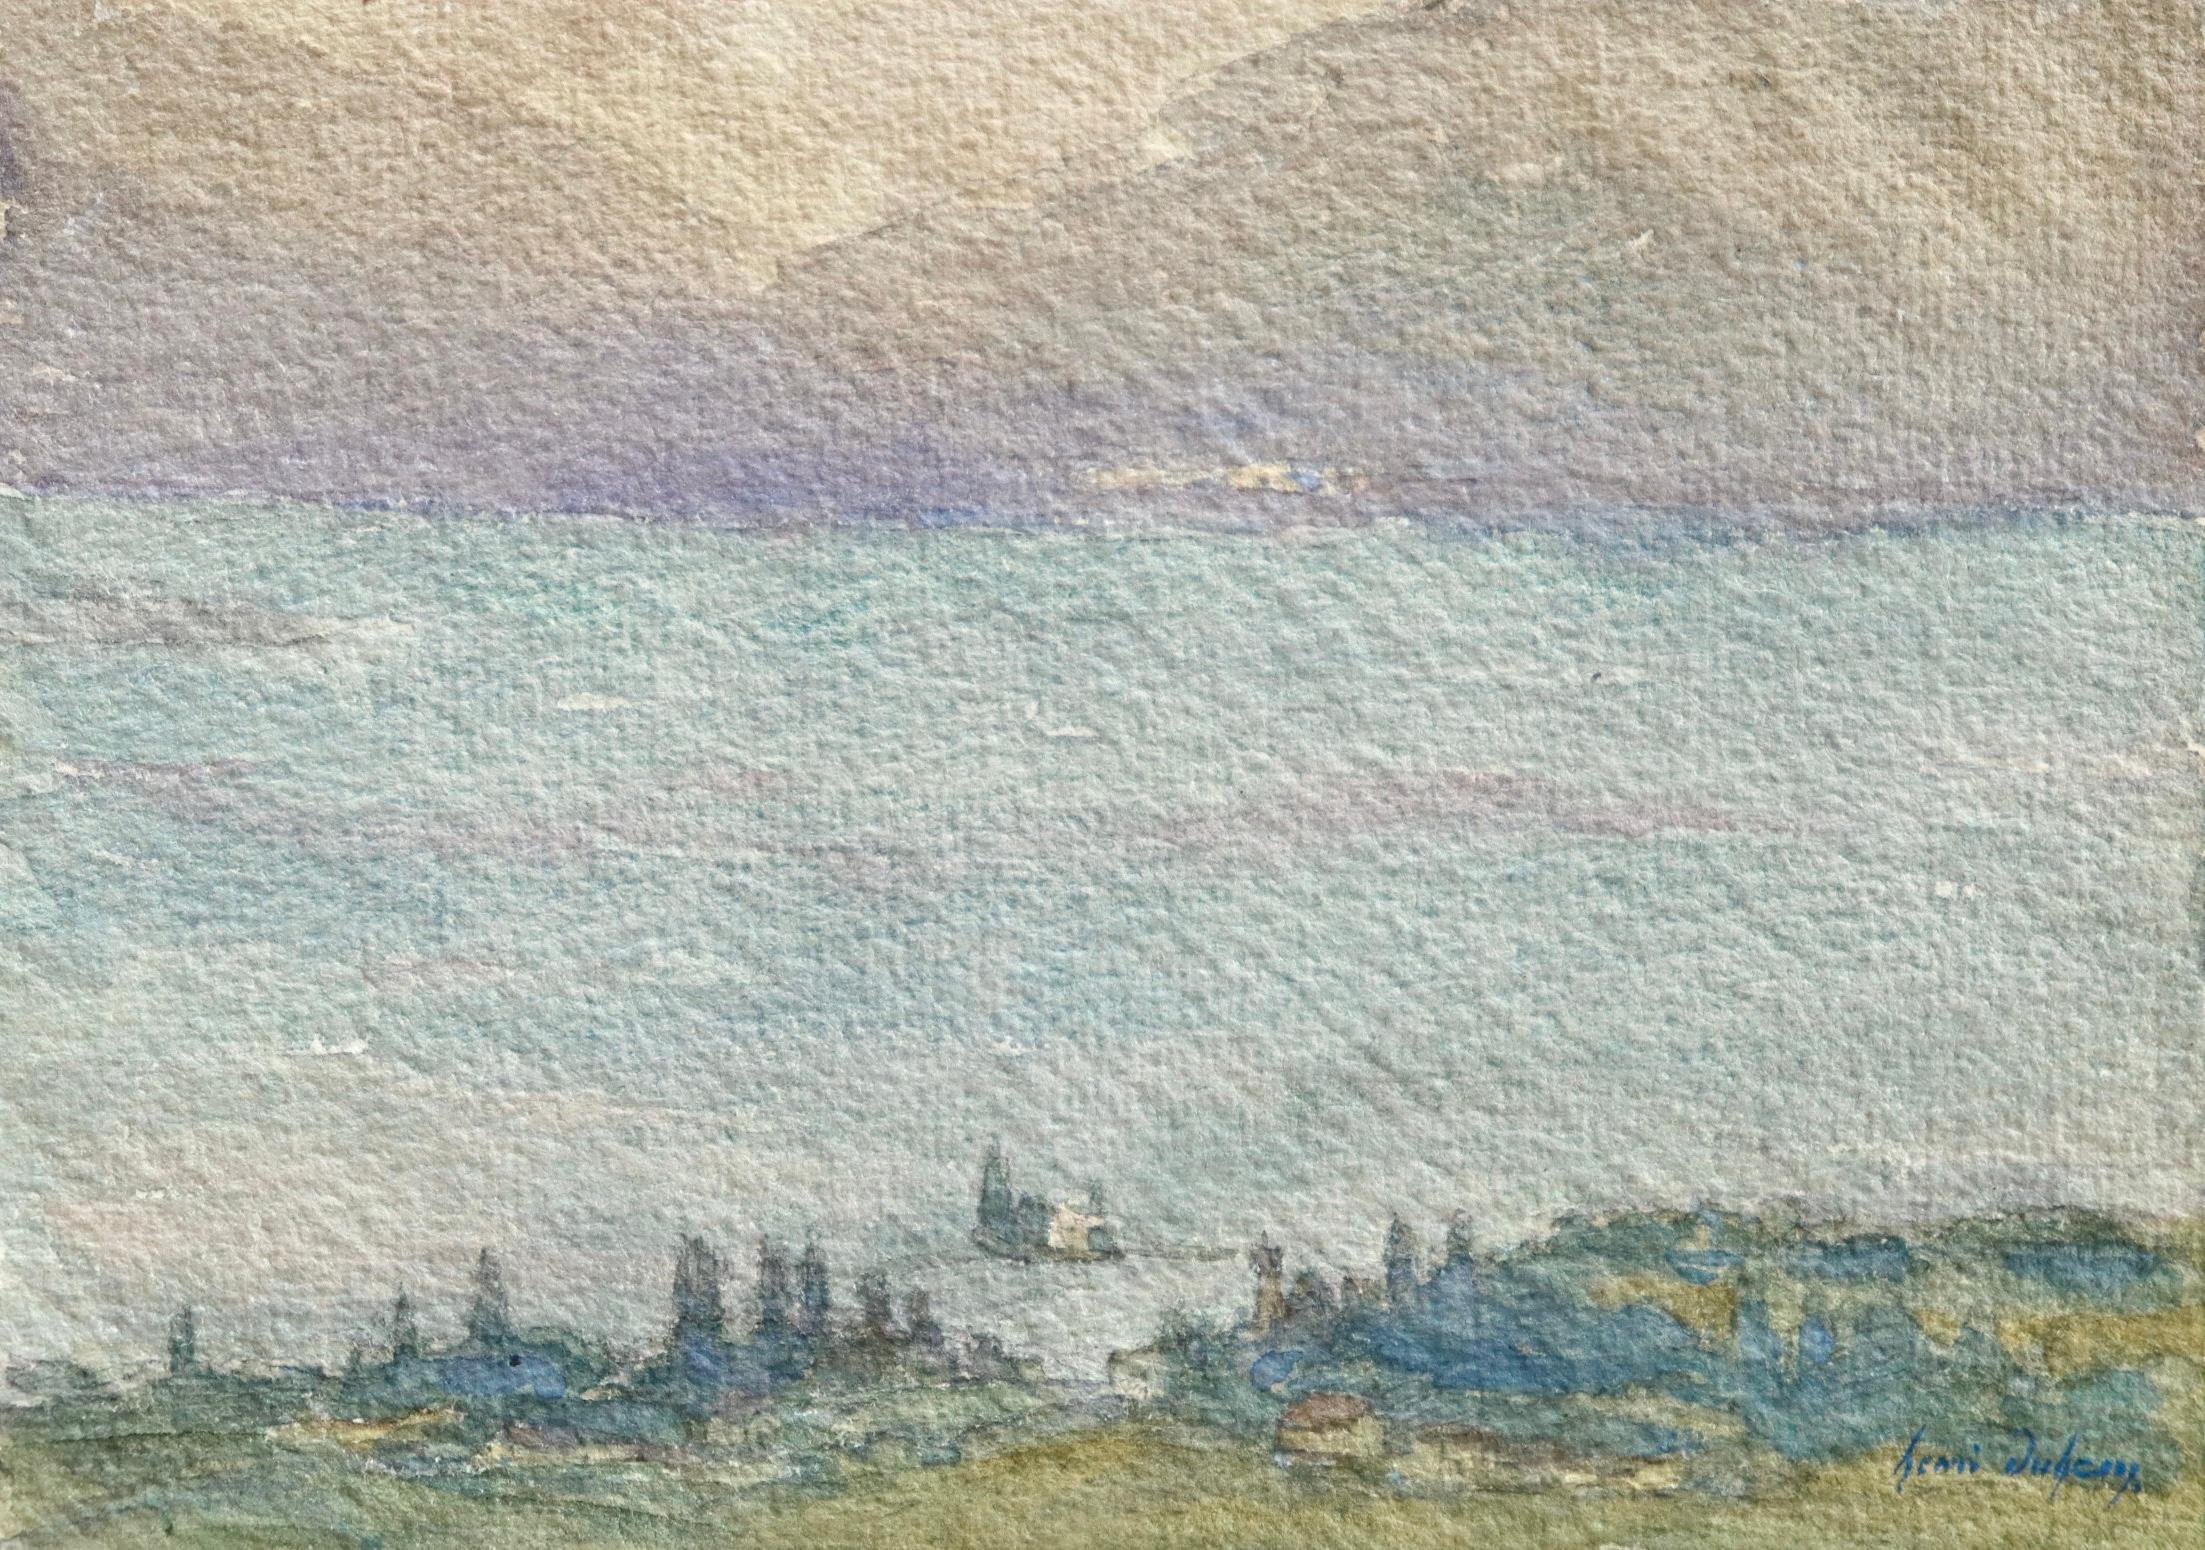 Signiertes impressionistisches Aquarell auf Papier um 1920 von Henri Duhem. Das Werk zeigt einen Blick auf den Genfer See und die dahinter liegenden Berge. Gemalt in schönen Blau-, Grün- und Violetttönen.  

Unterschrift:
Signiert unten